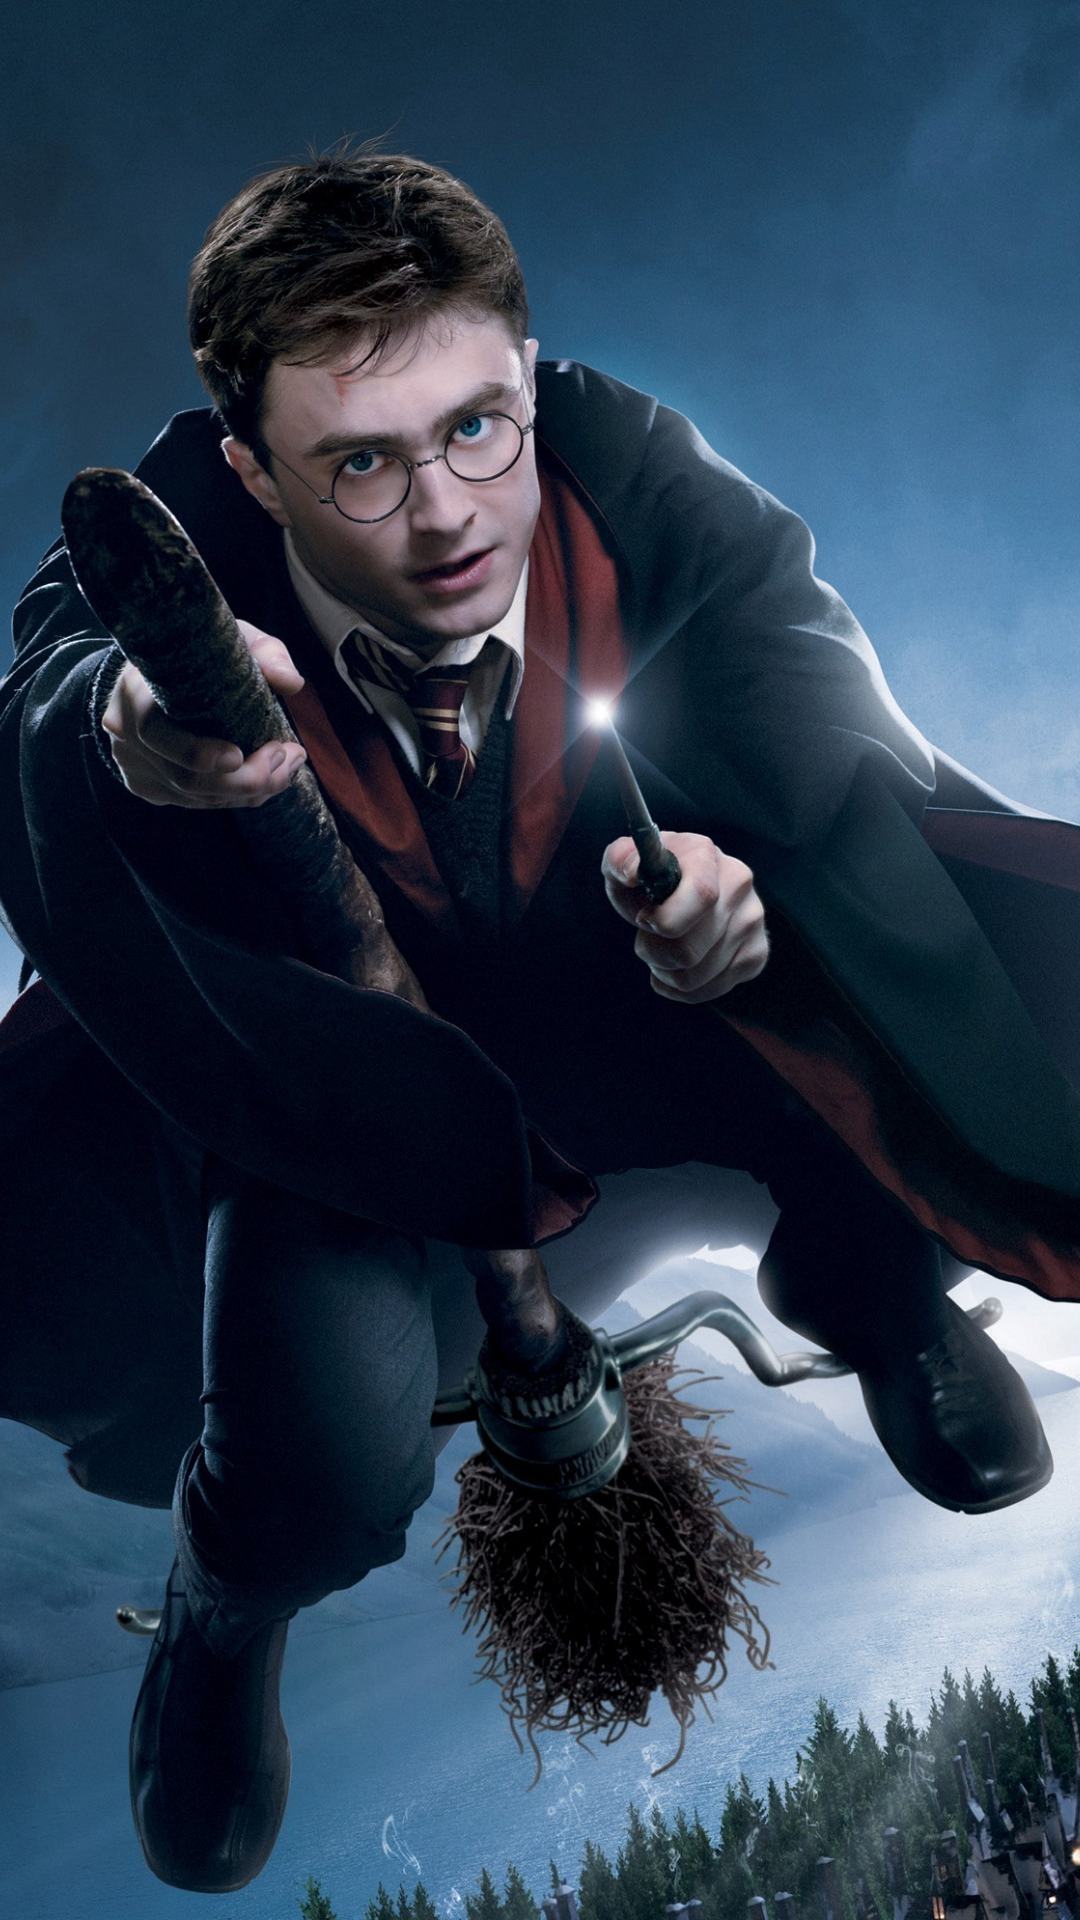 Wallpaper de Harry Potter en su escoba